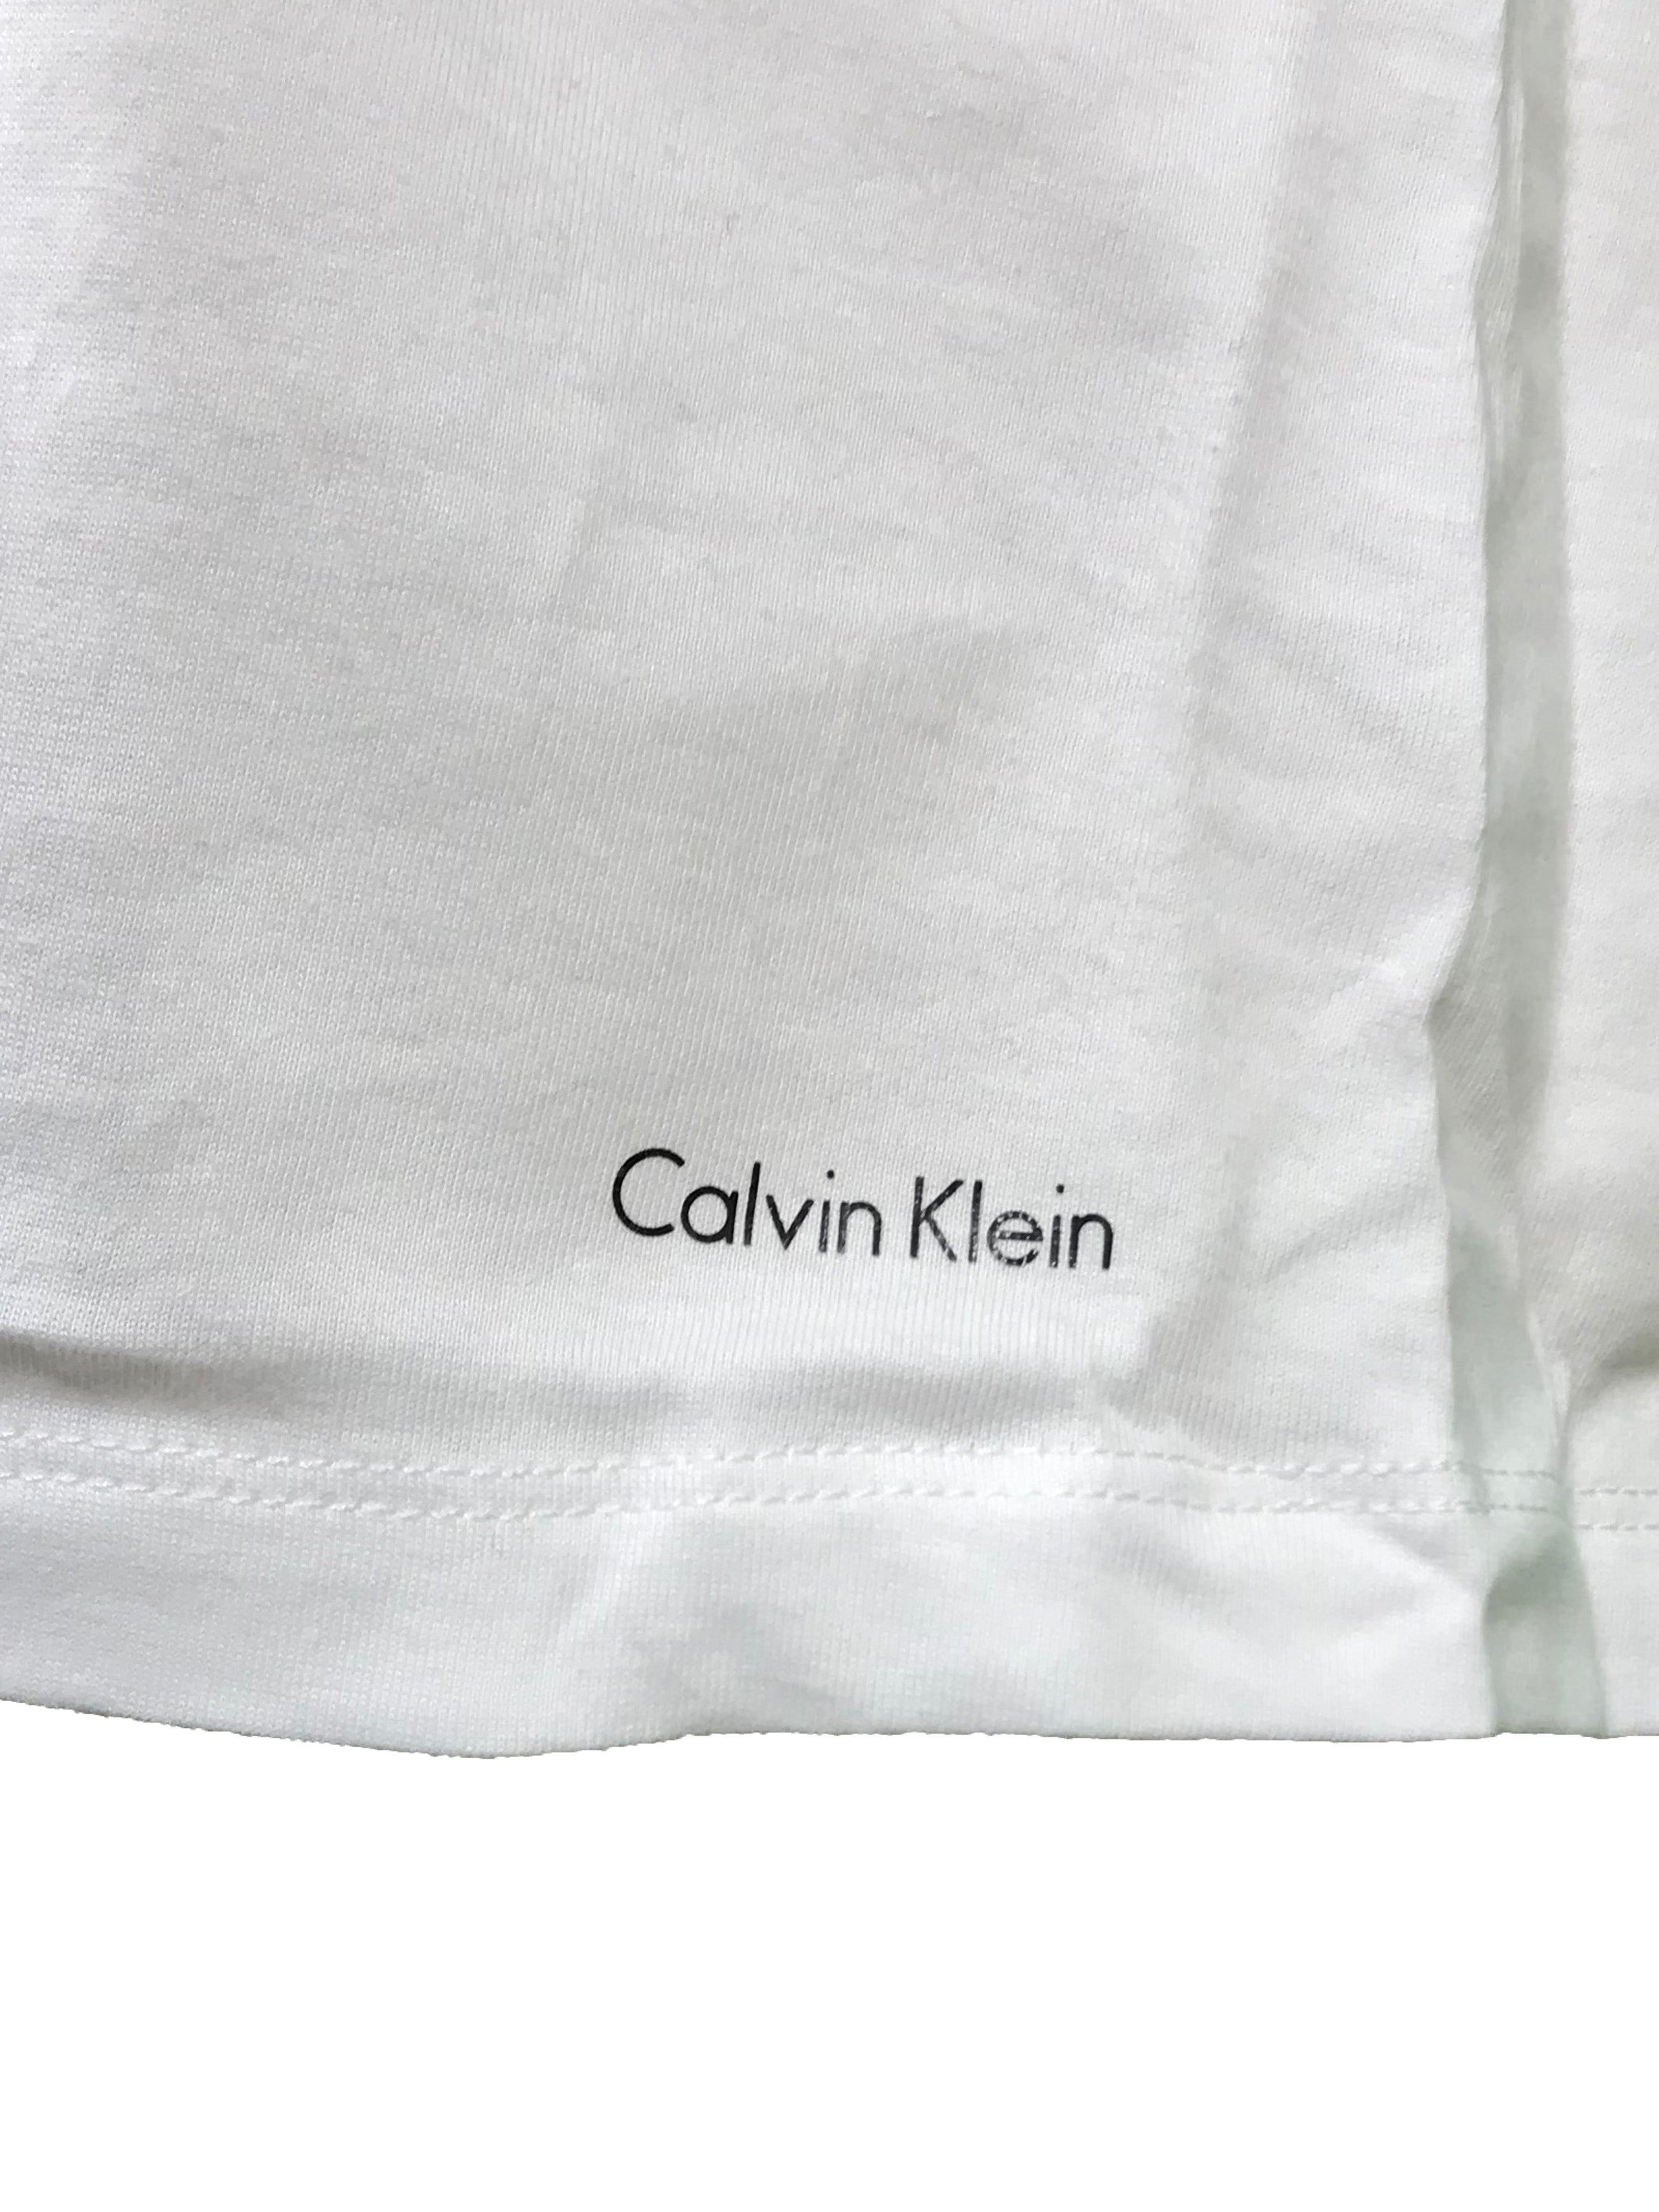 Calvin Klein White V-Neck T-Shirt Men's Size M